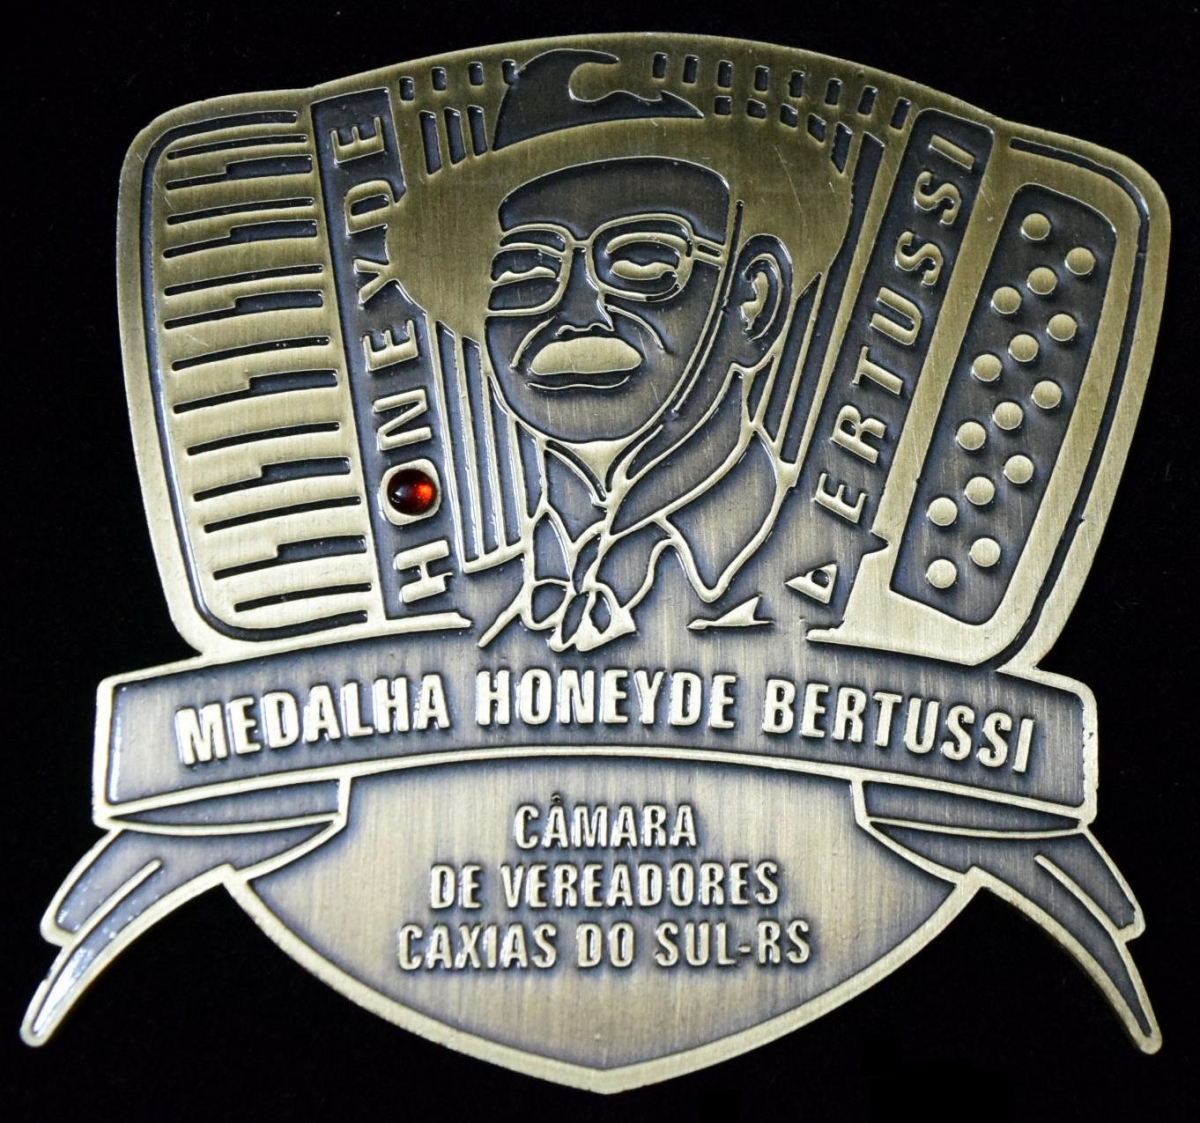 Comenda Medalha Honeyde Bertussi de 2015 será entregue em sessão solene desta quinta-feira